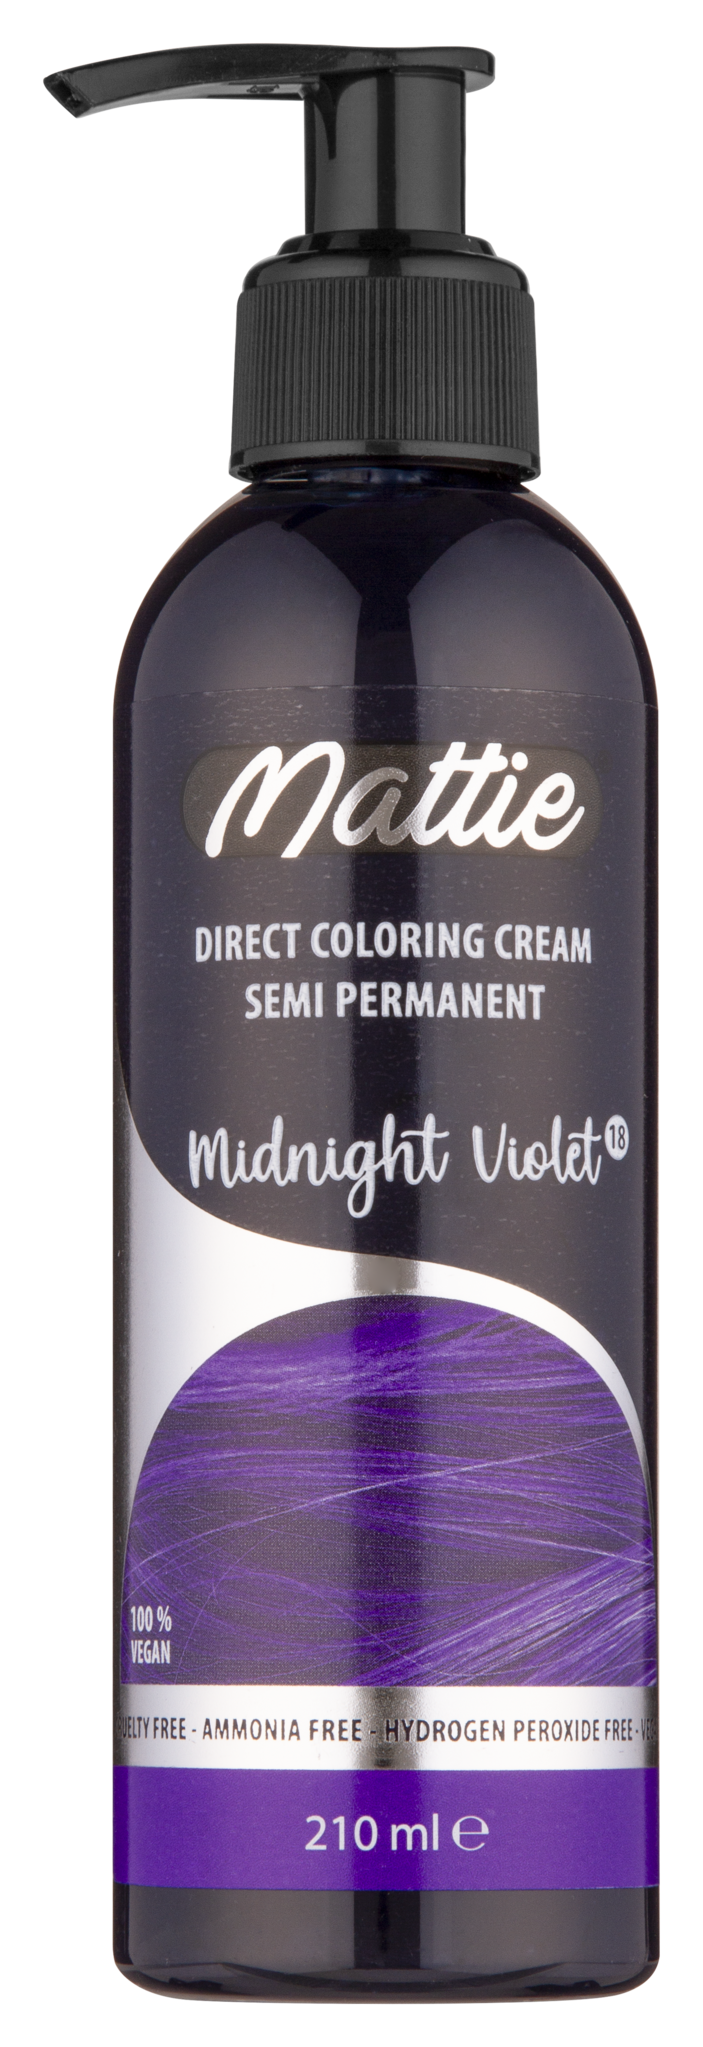 Mattie Direct Coloring Cream Semi-Permanent - Midnight Violet 210ml